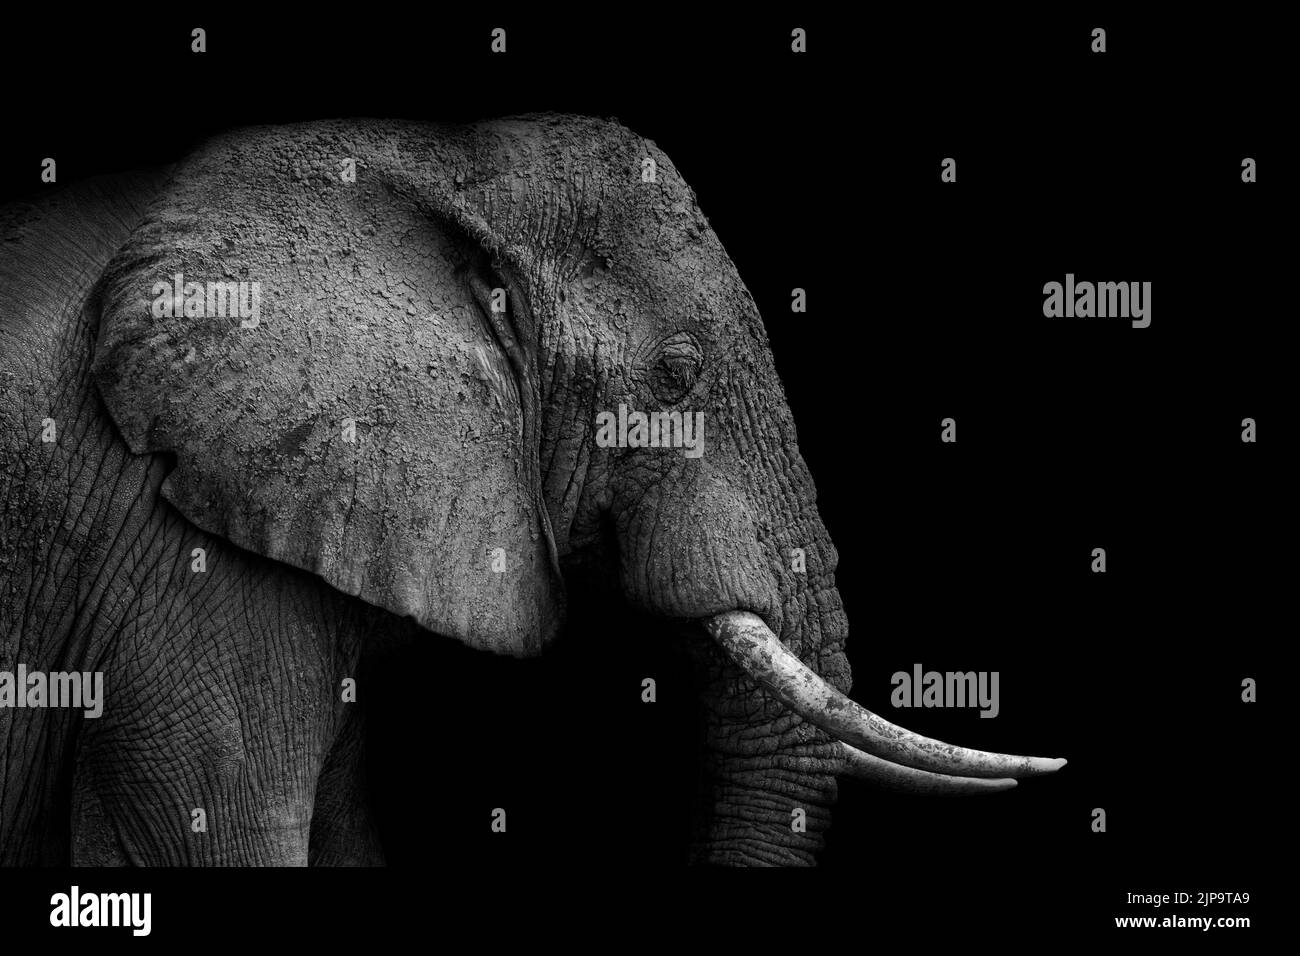 ritratto di animali, elefante, testa di elefante, ritratti di animali, elefanti, teste di elefante Foto Stock